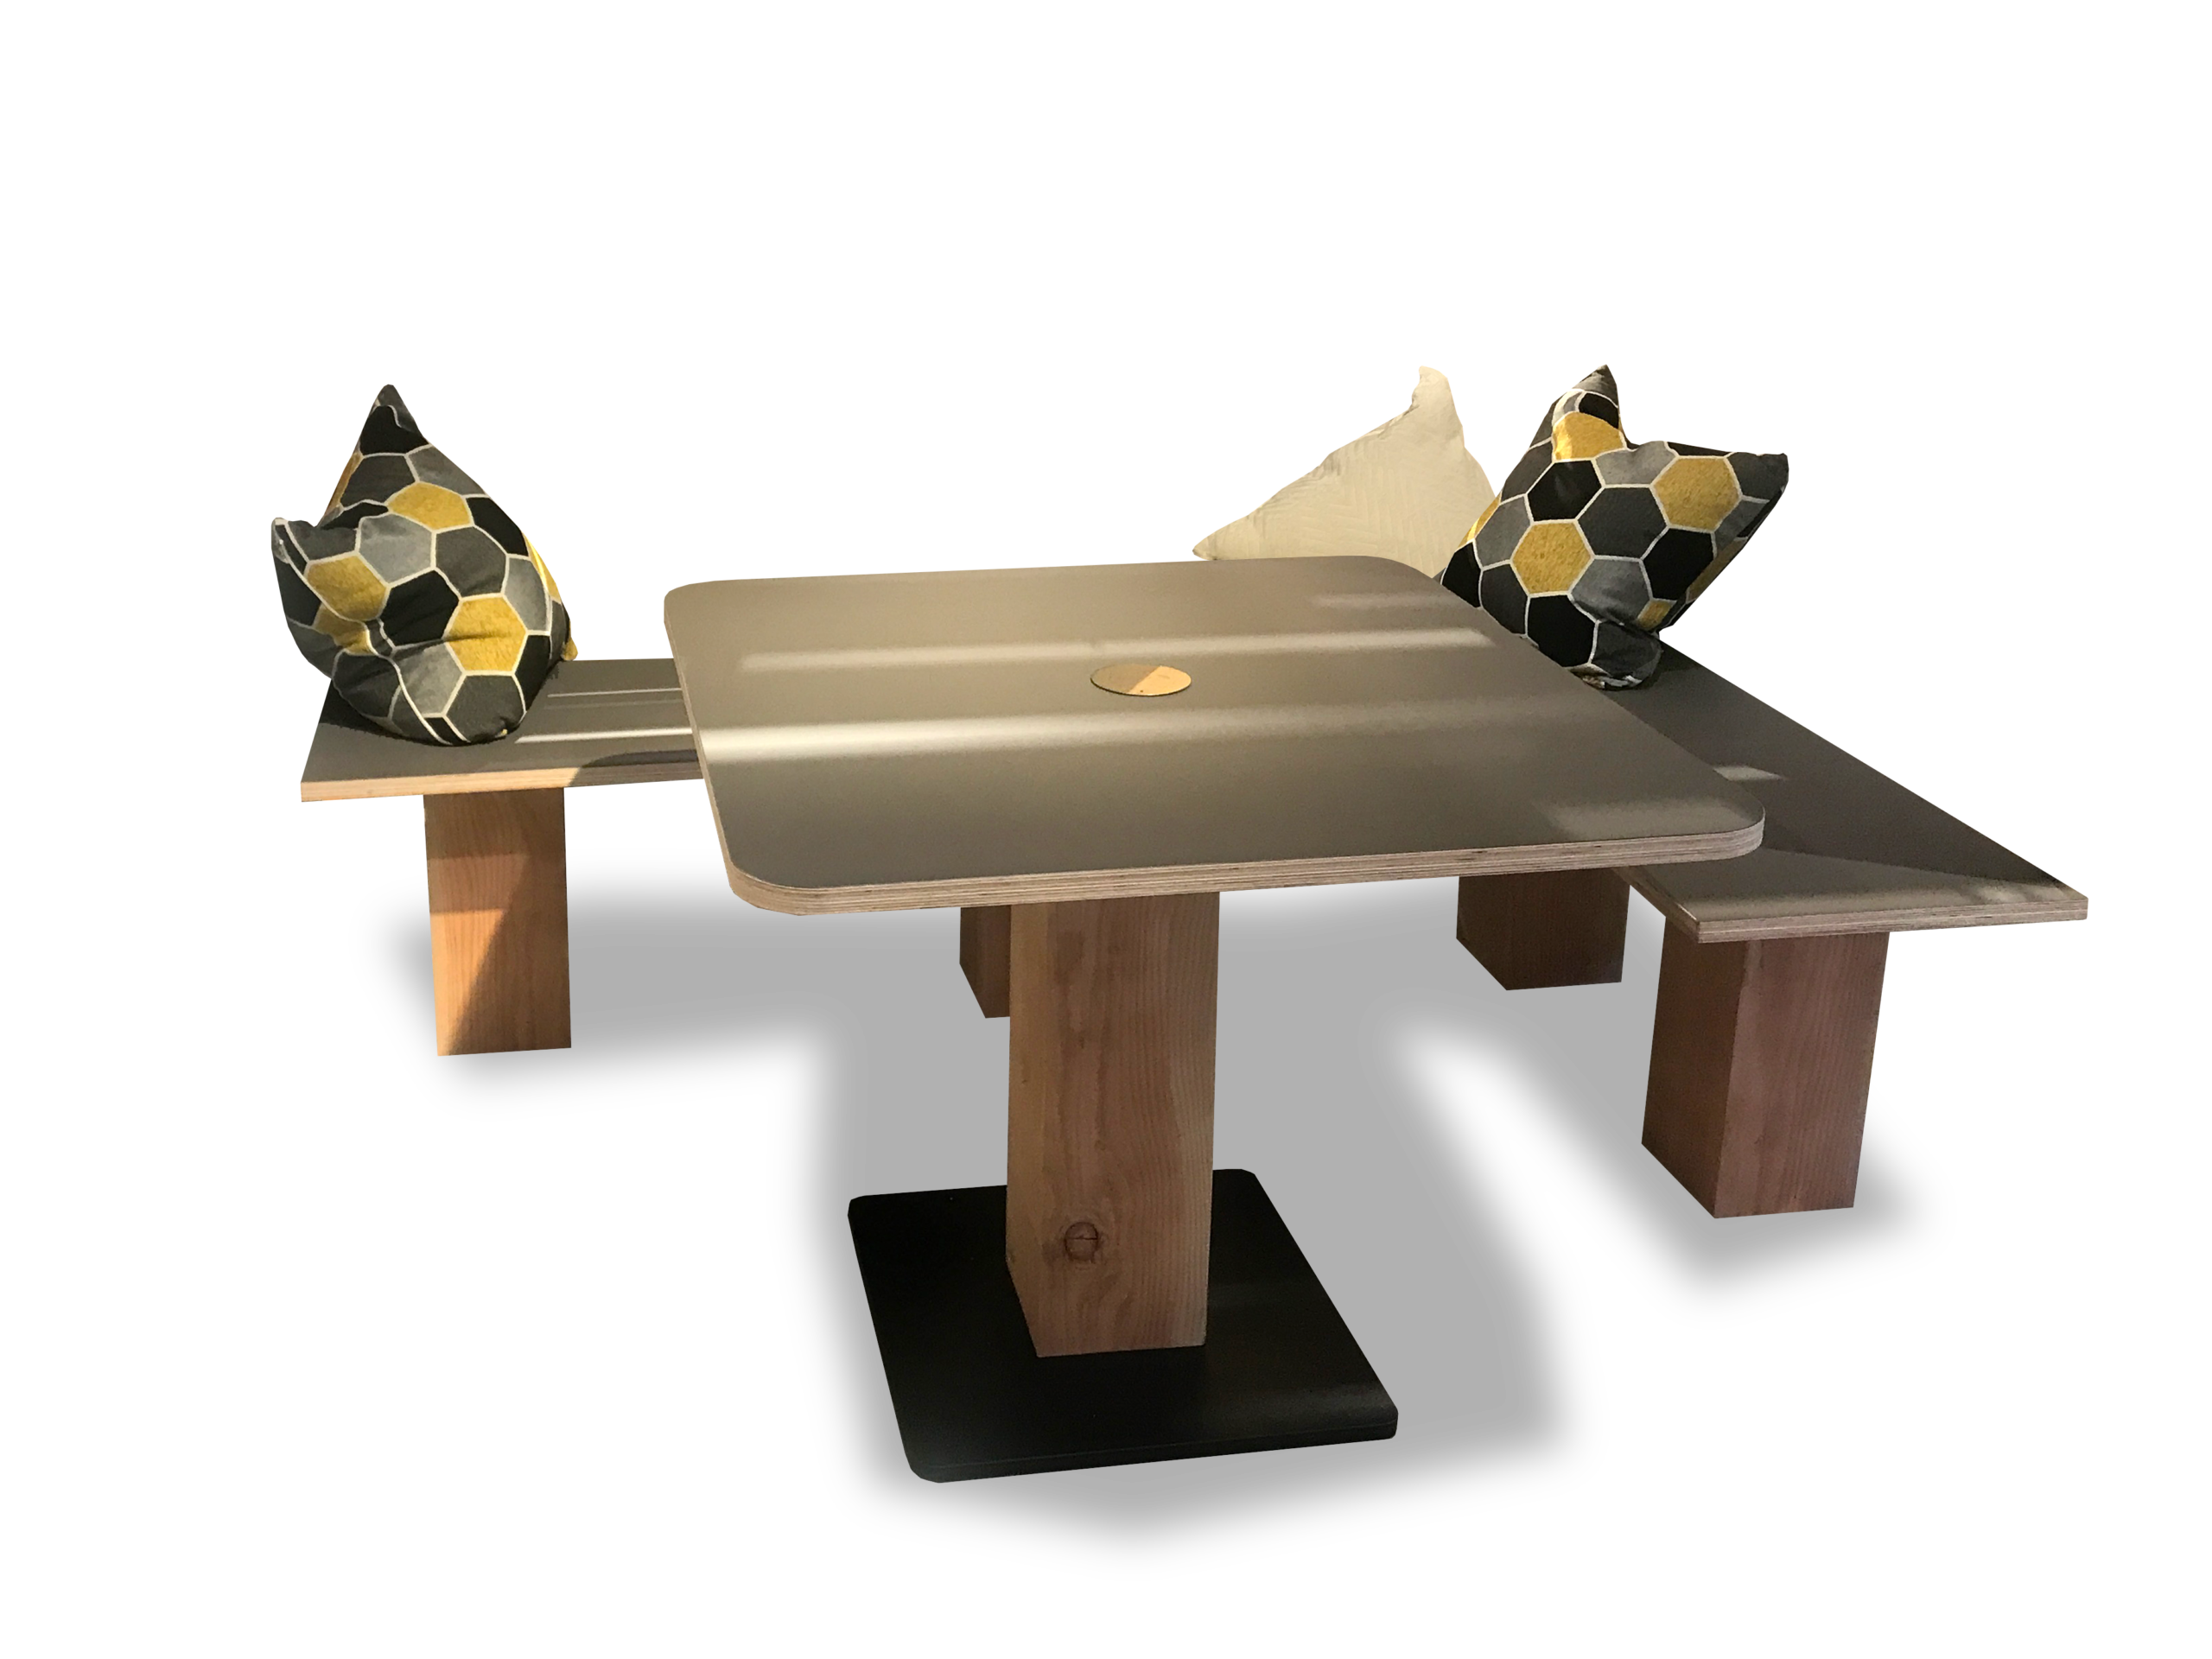 custom corner table for home or resimercial settings